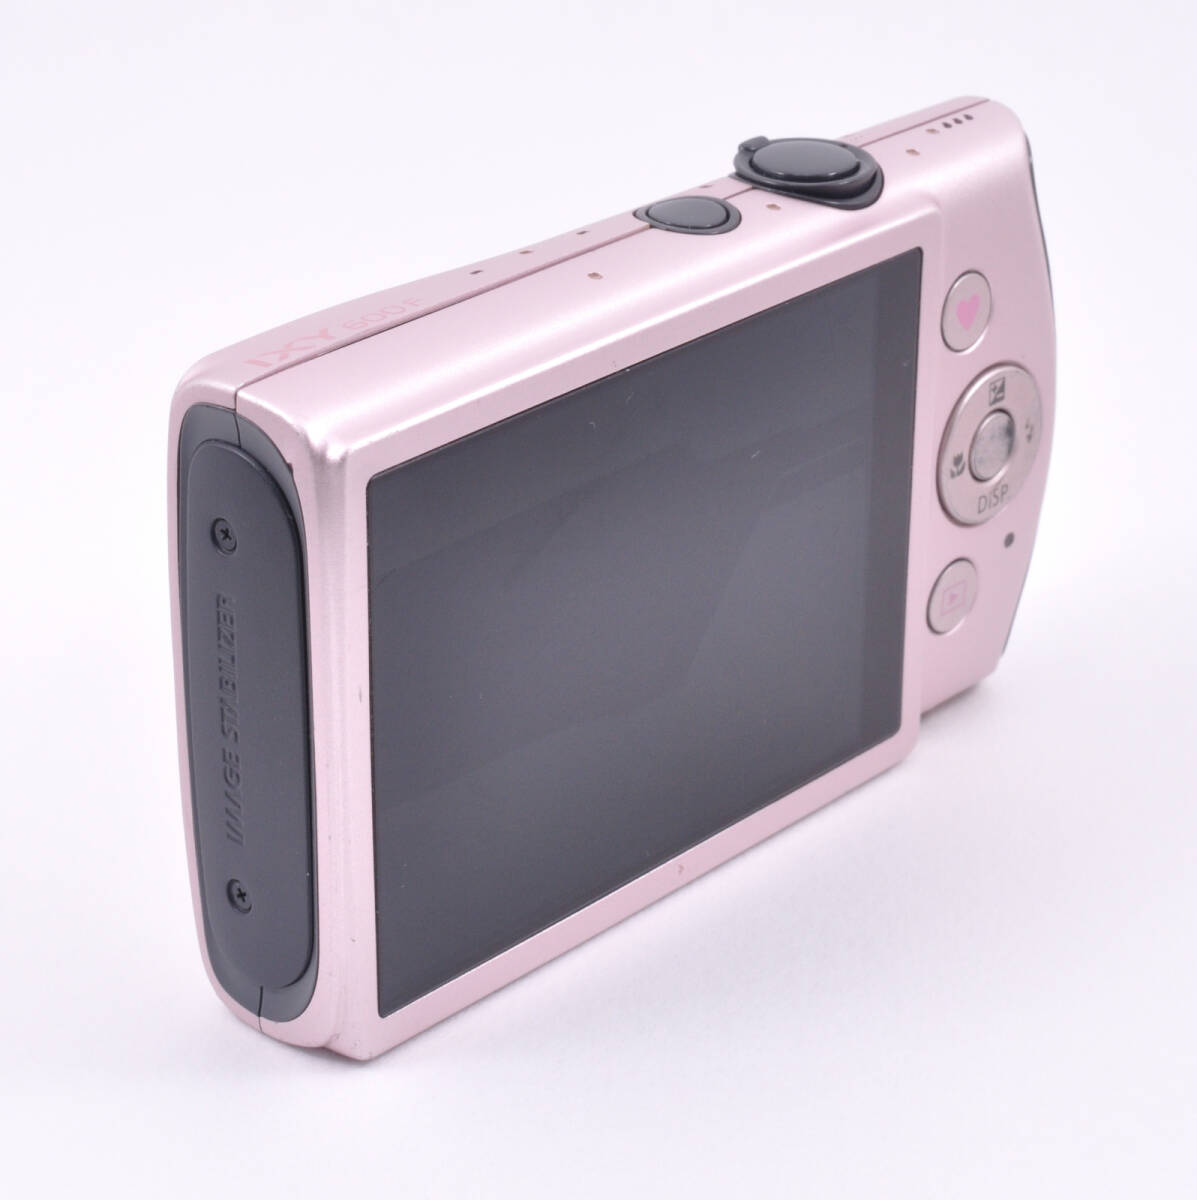 Canon キャノン IXY 600F ピンク Pink PC1676 デジカメ コンパクトデジタルカメラ ジャンク_画像3